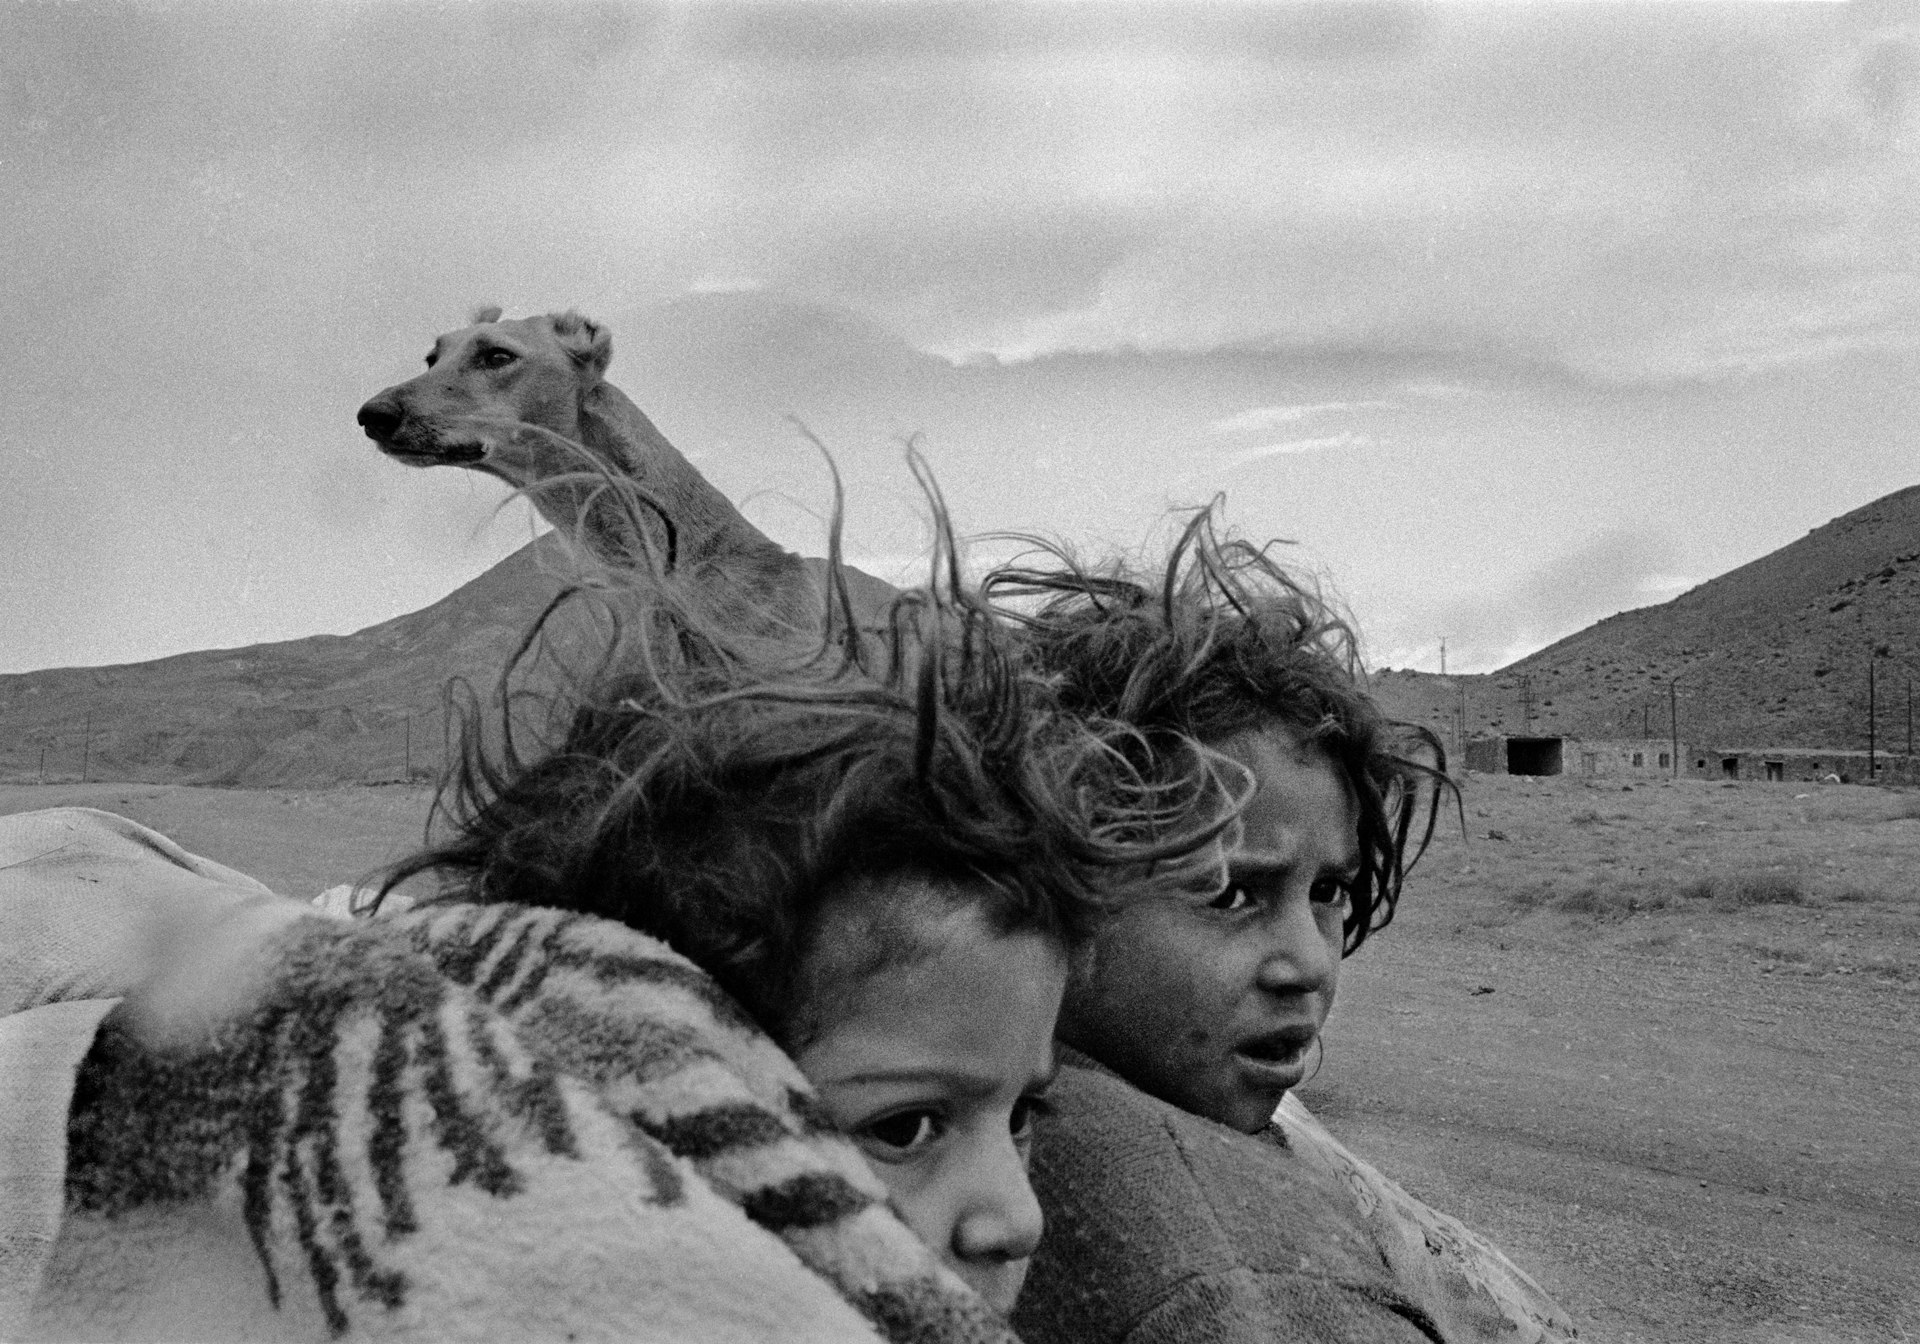 Nomads. Village in Kars, Turkey. 1990.